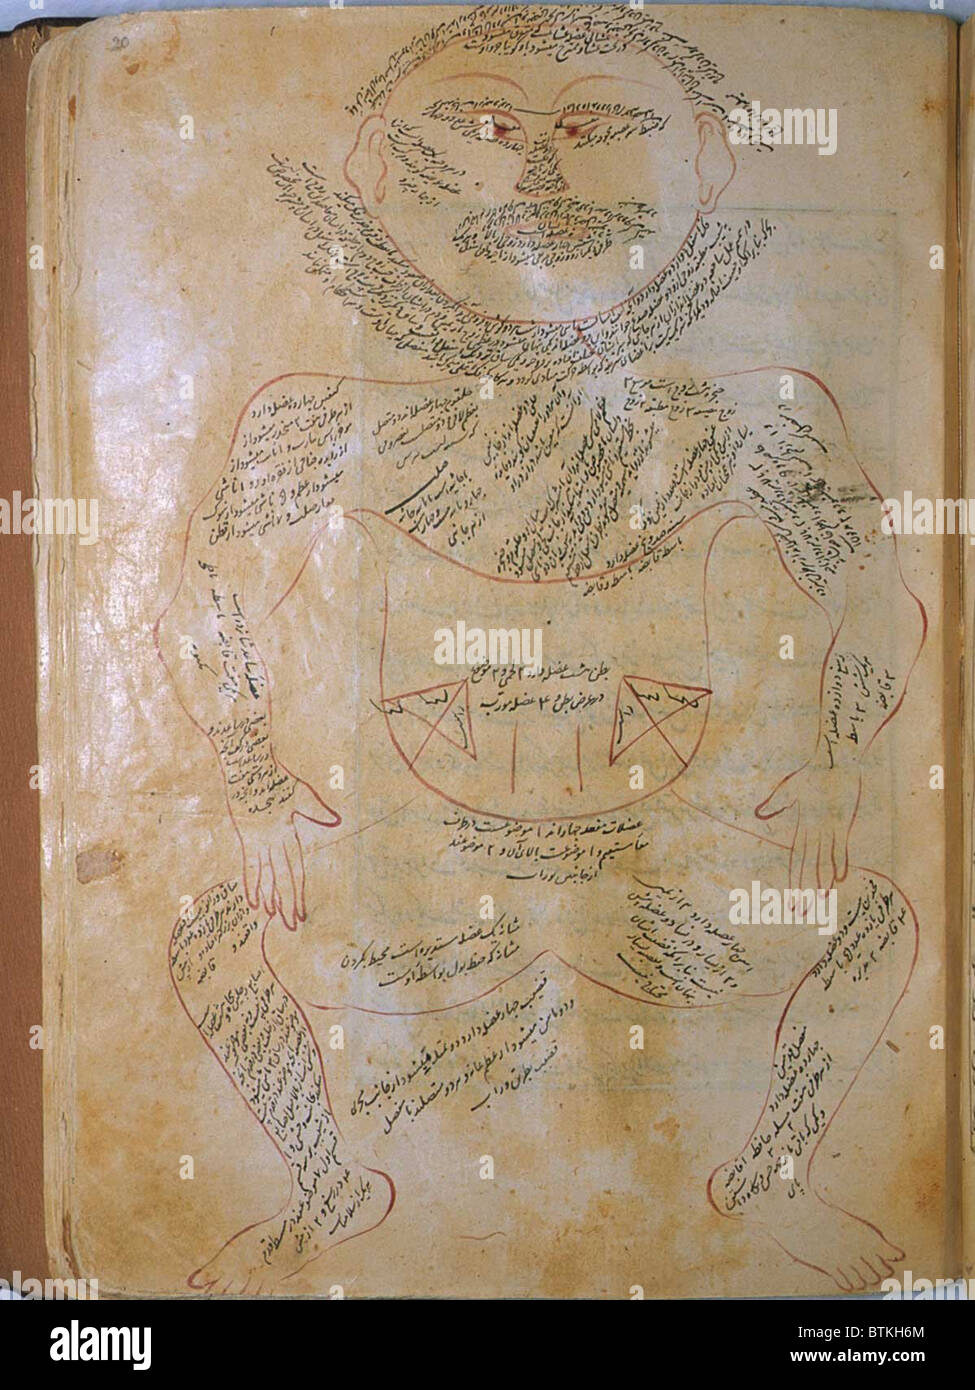 La muscolatura umana, da MANSUR'S ANATOMY, creato dal persiano di studioso e di medico, Mansur ibn Ilyas (ca. 1370-1423). Il muscolo figura è mostrata frontalmente, con estese arabo le didascalie che descrivono i muscoli. Copia completata da Hasan ibn Ahmad, lavorando in Isfahan, nel 1488. Foto Stock